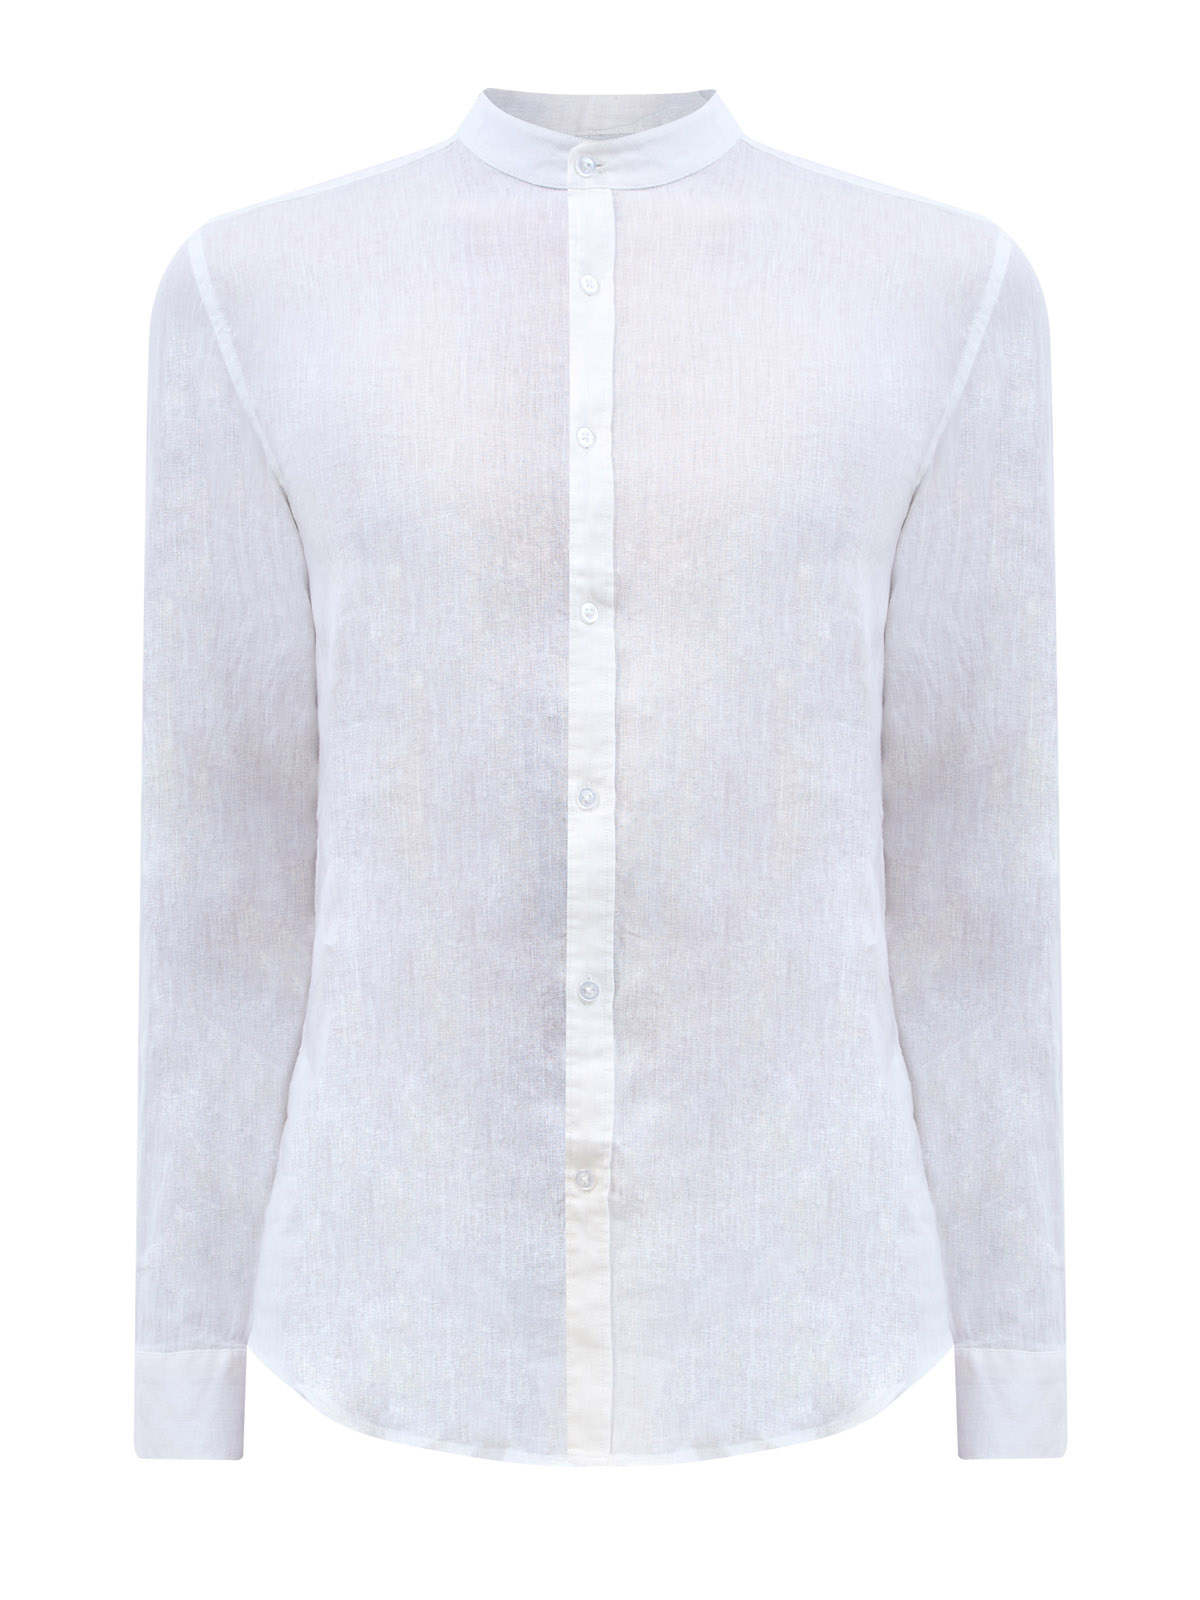 Рубашка из дышащей льняной ткани с регулируемыми рукавами CUDGI, цвет белый, размер 48;50;52;54